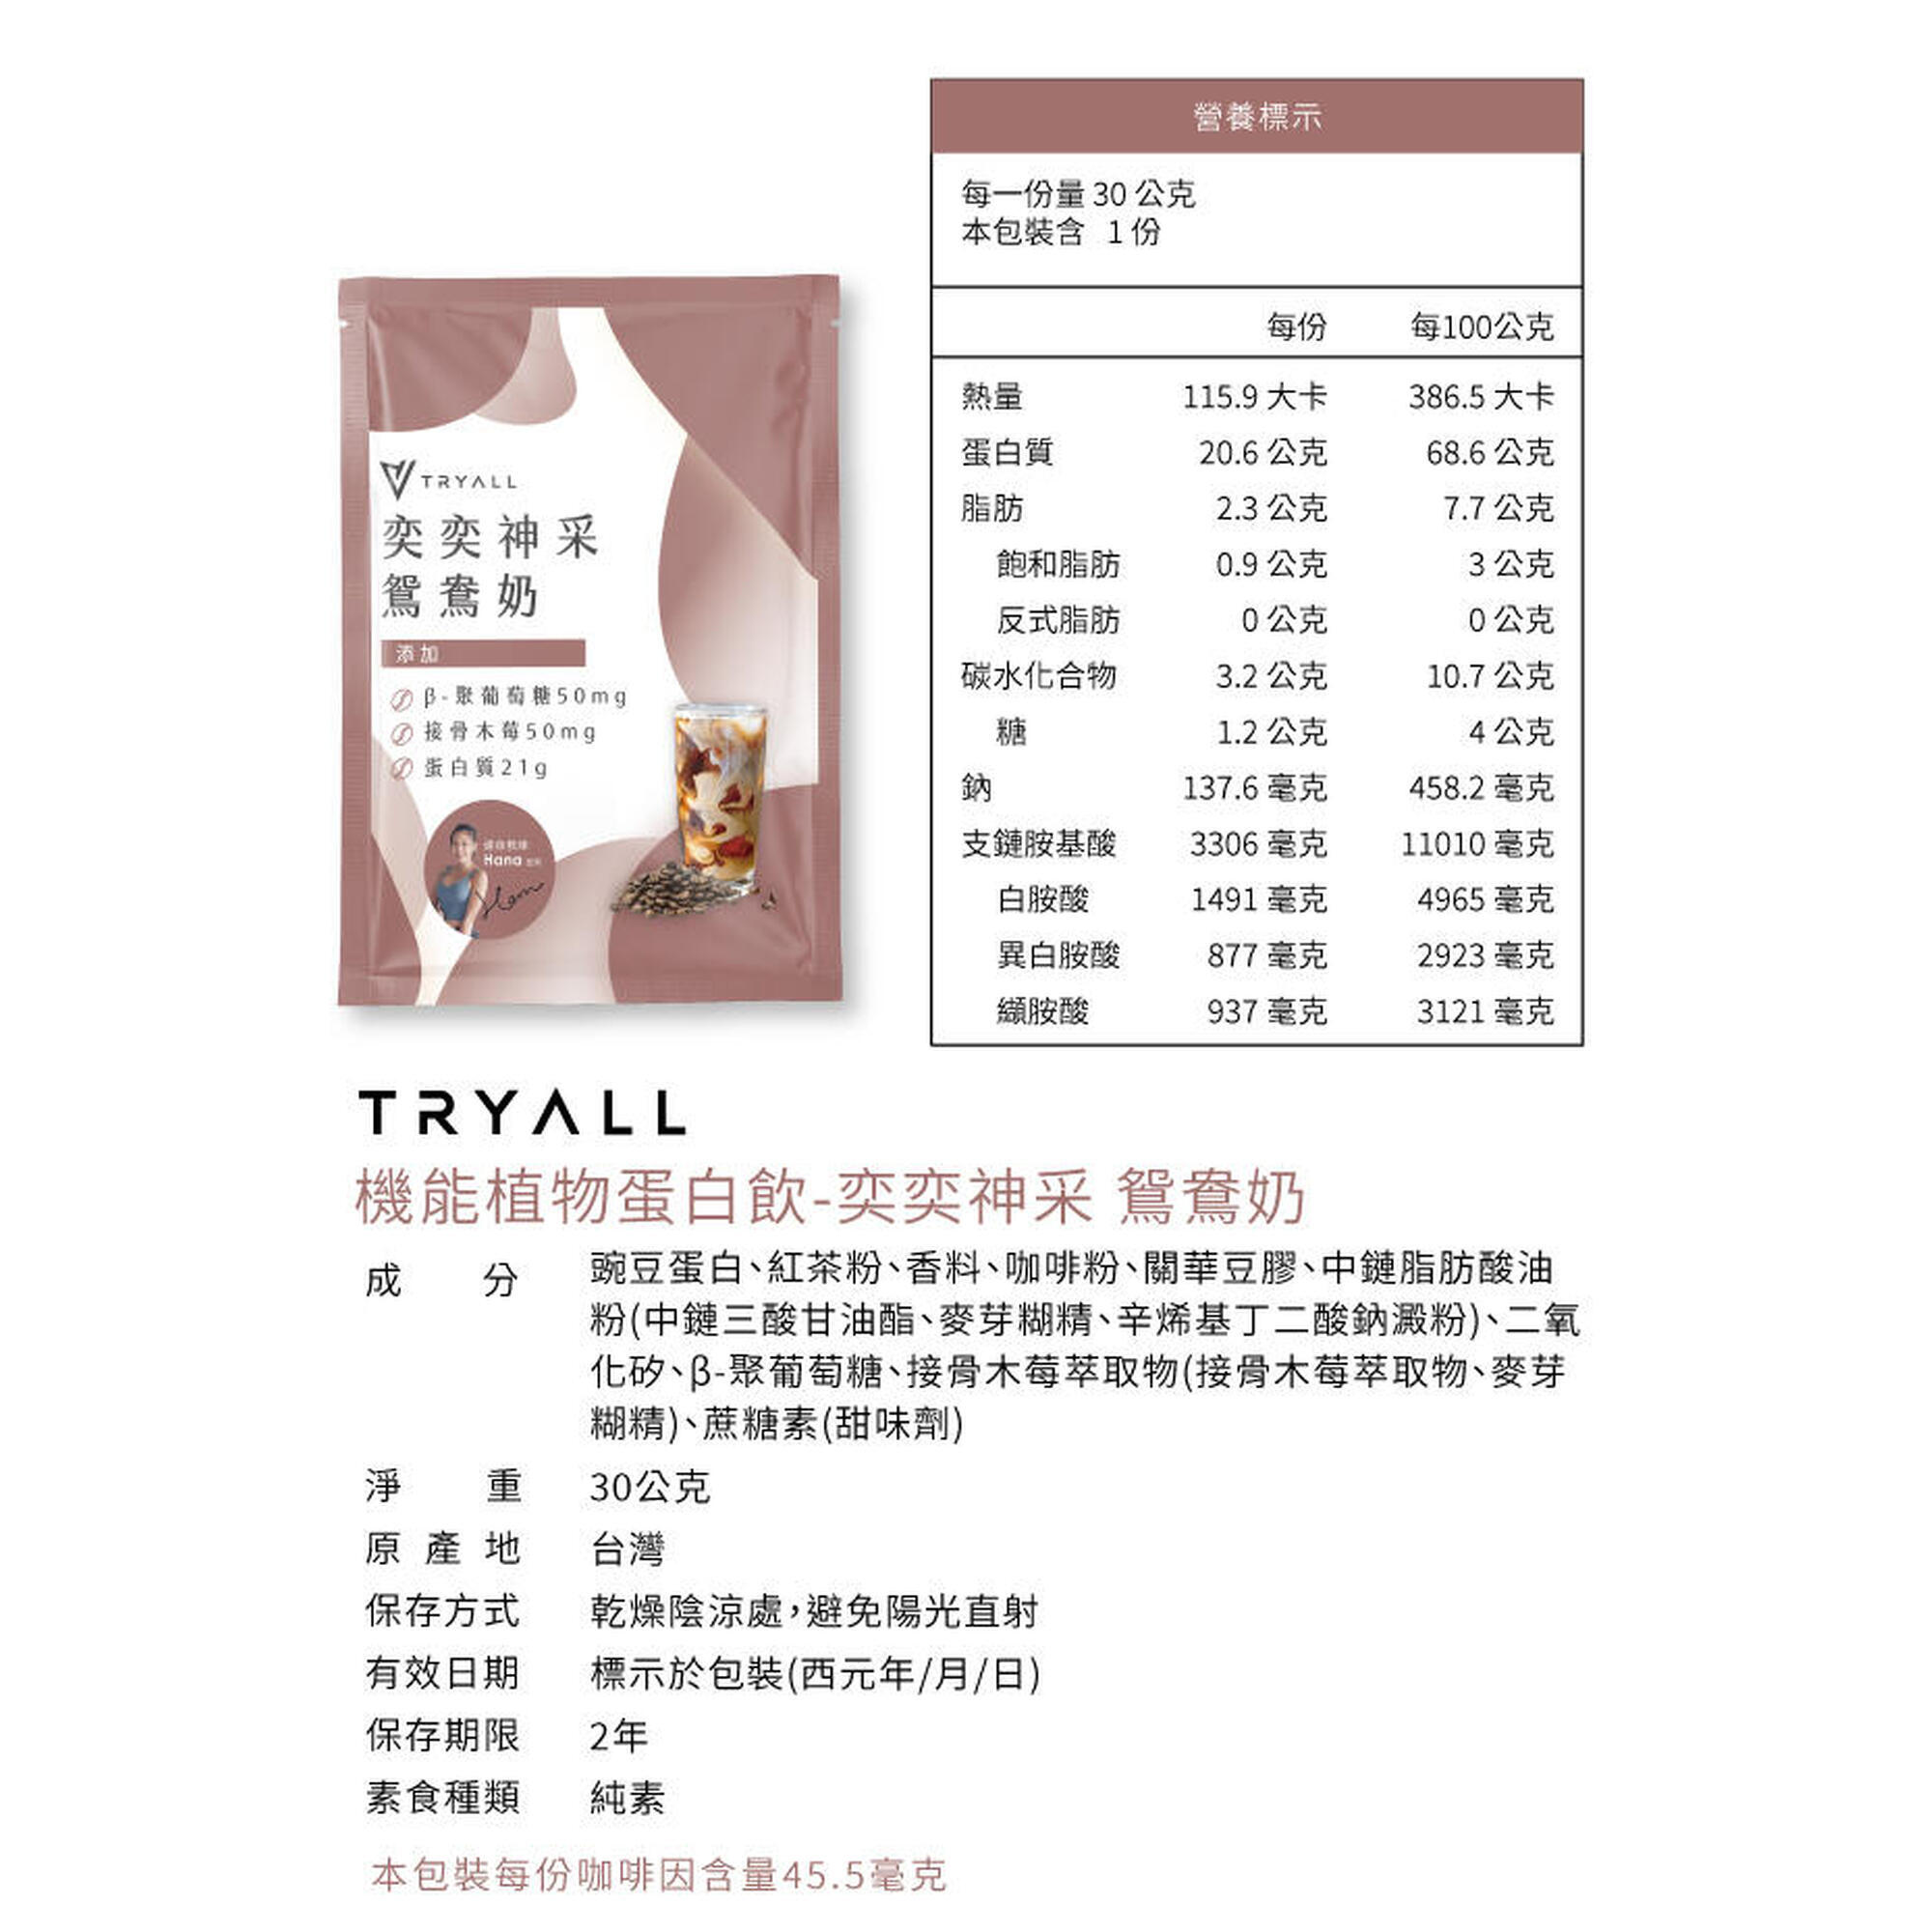 Vegan Functional Pea Protein Isolate Sachet (15 packs) - Yuenyueng Milk